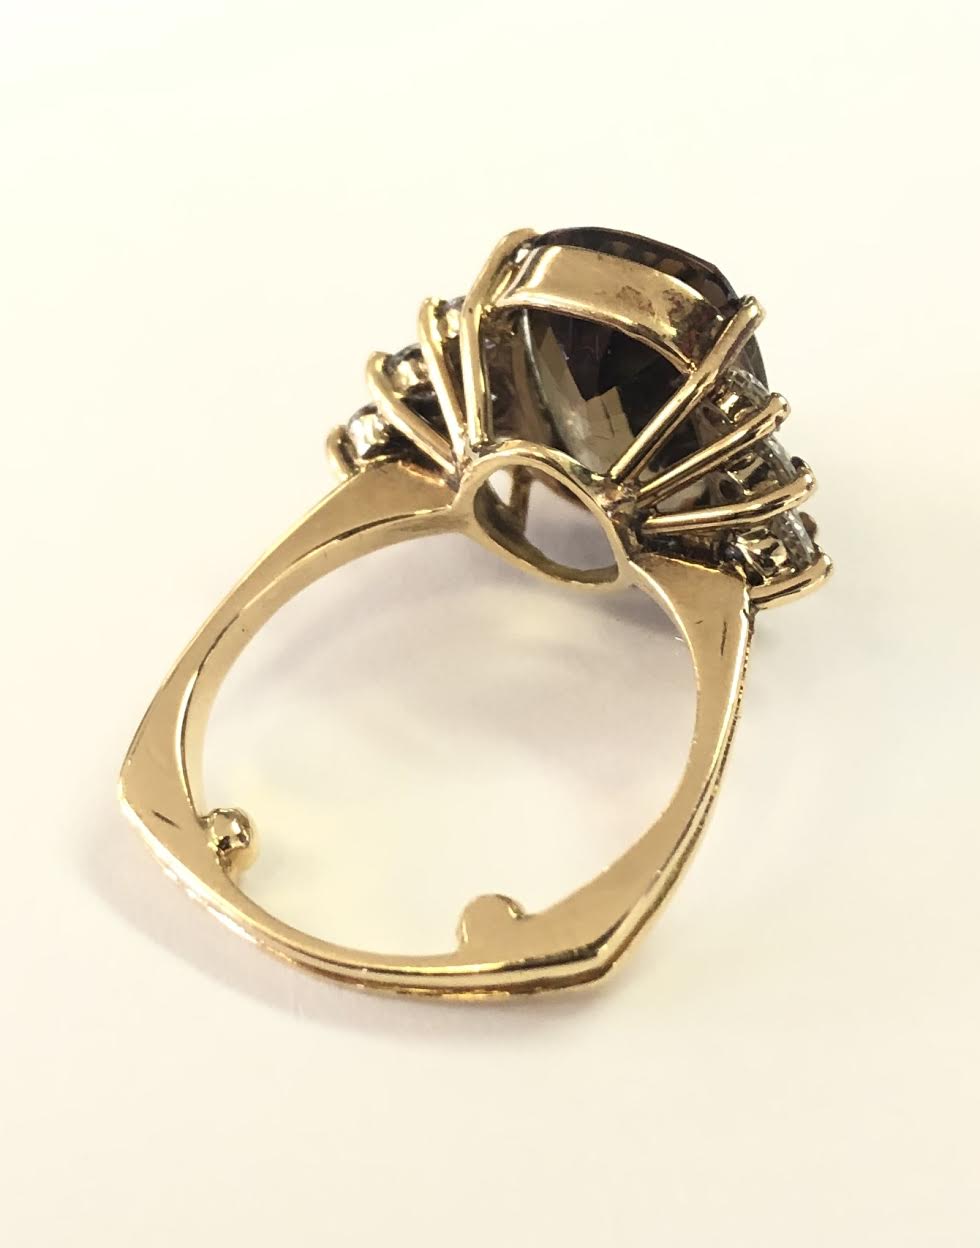 Yasuko Azuma 18K Gold Tapered Zen Ring with Bezel-Set Old Euro Cut Diamond